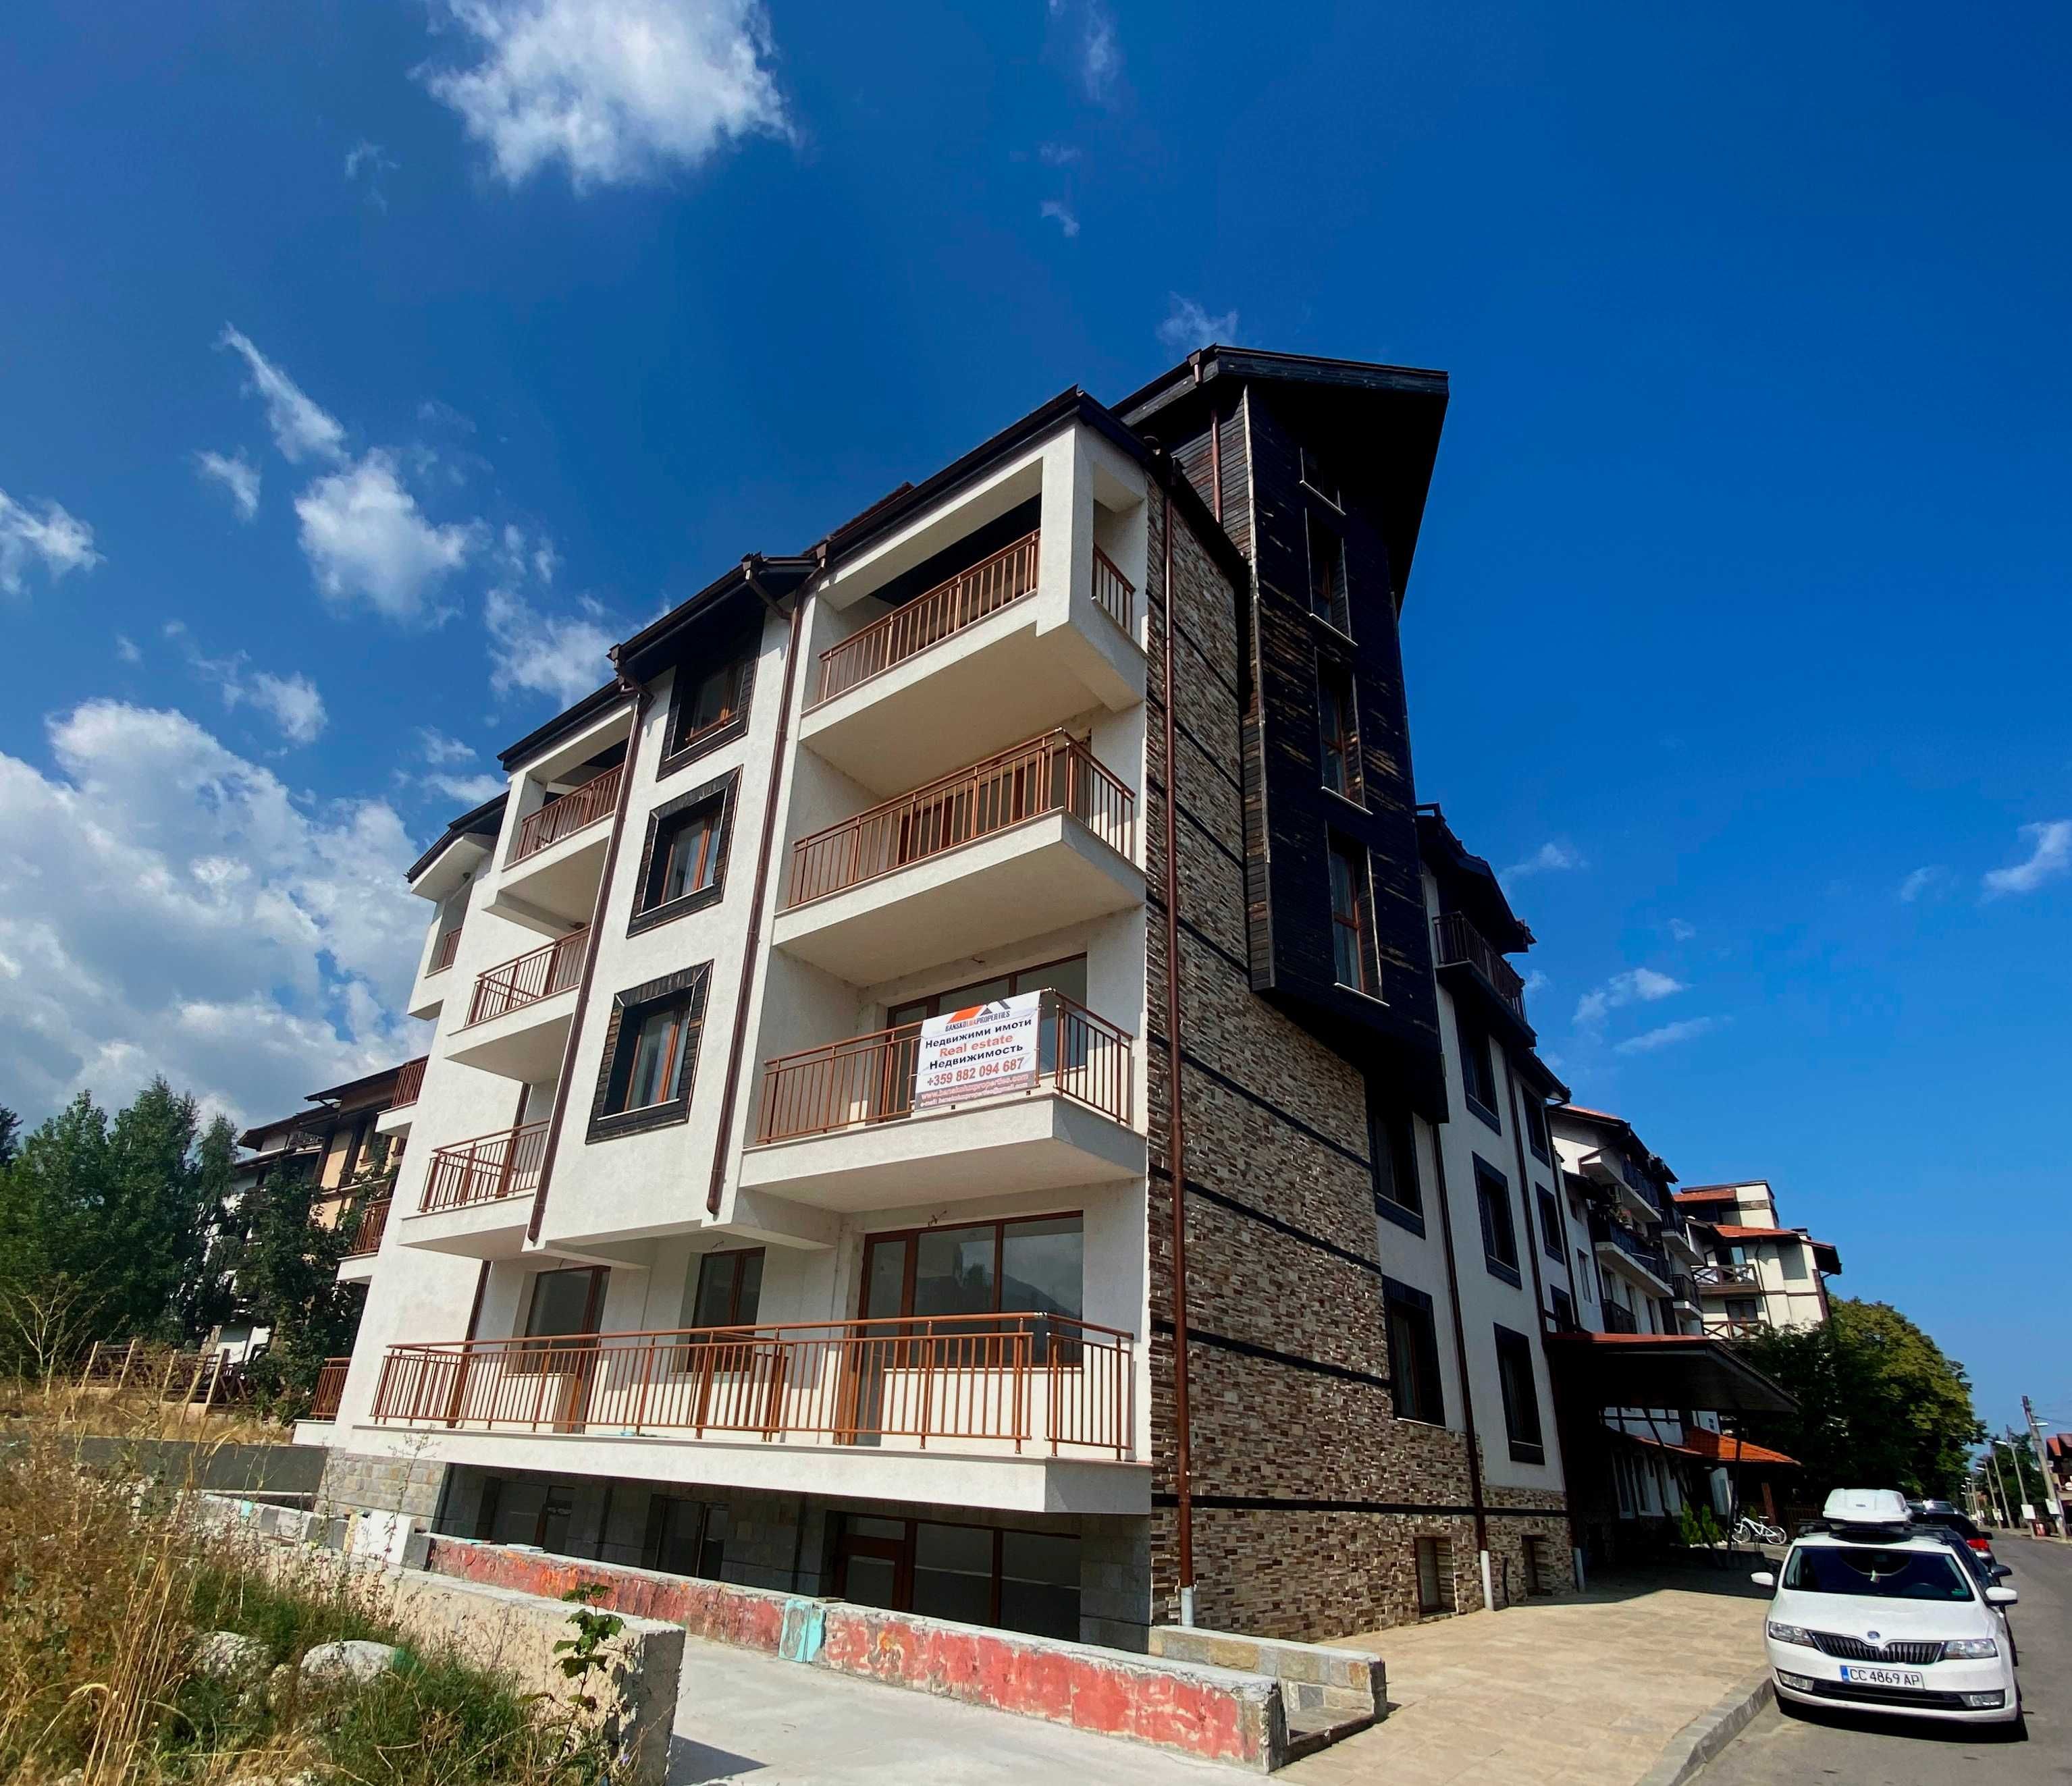 Южен едностаен апартамент за продажба в жилищна сграда в Банско